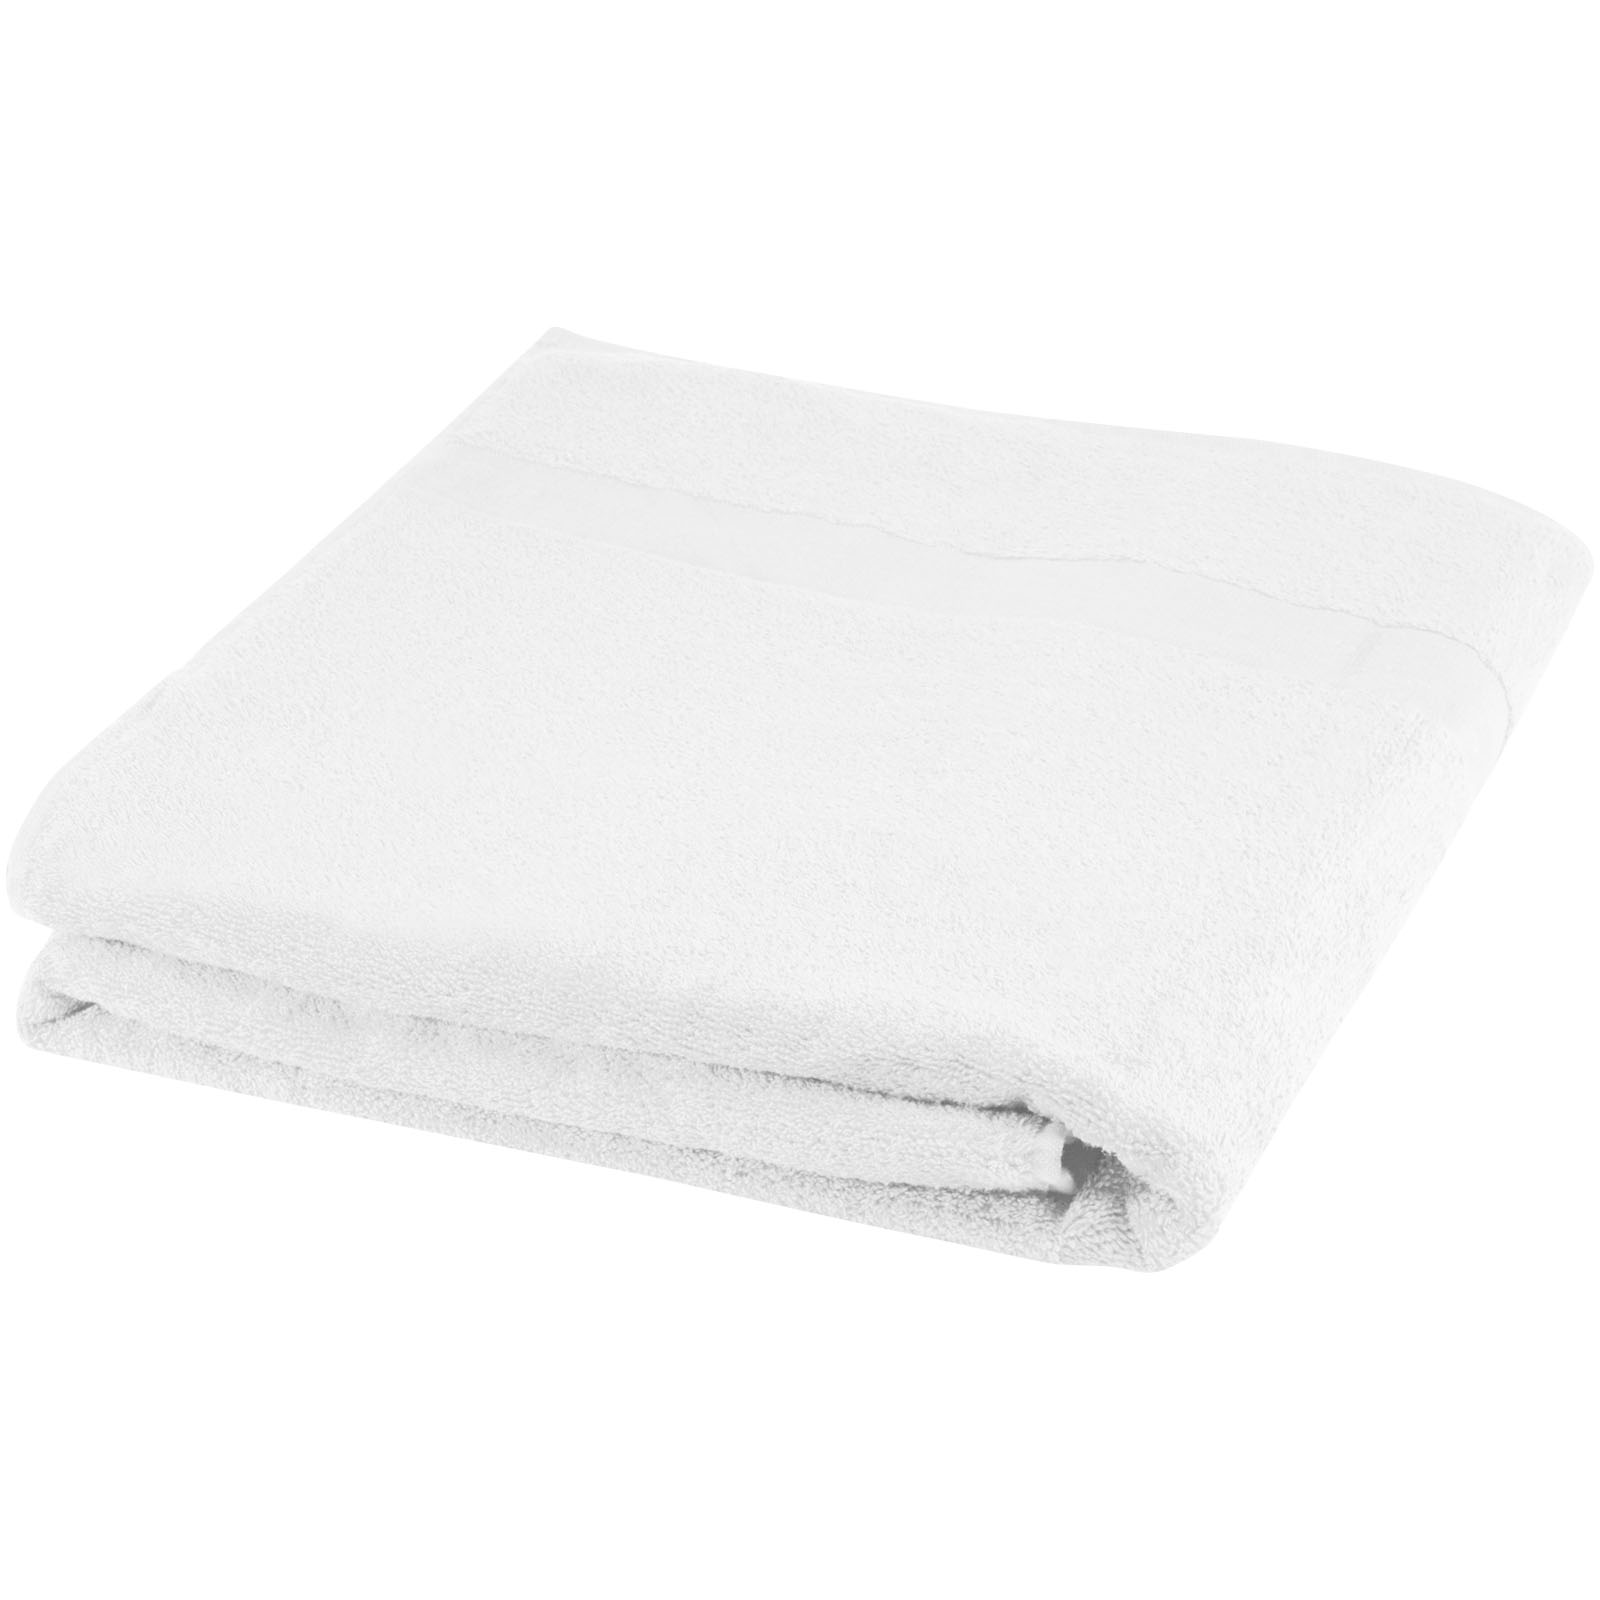 Towels - Evelyn 450 g/m² cotton towel 100x180 cm